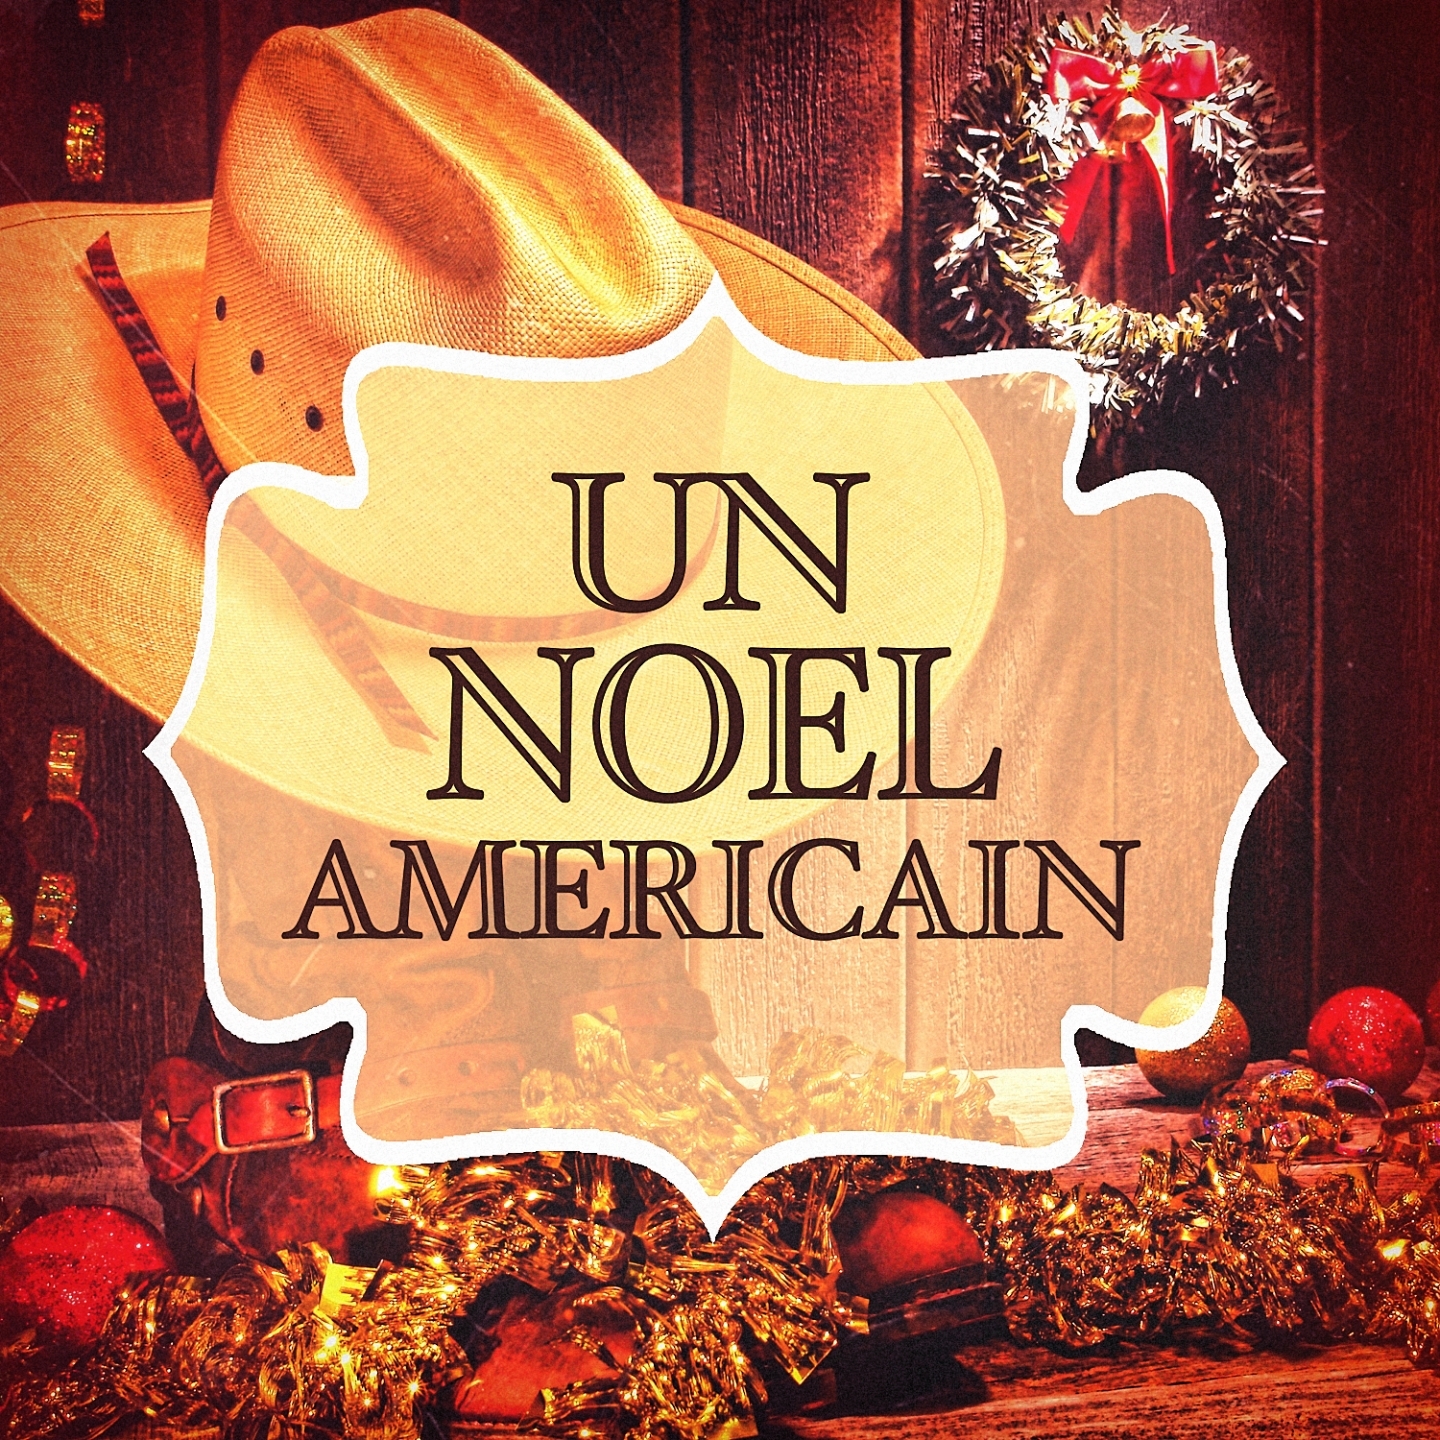 Le Noël américain (Les musiques de Noël américaines)